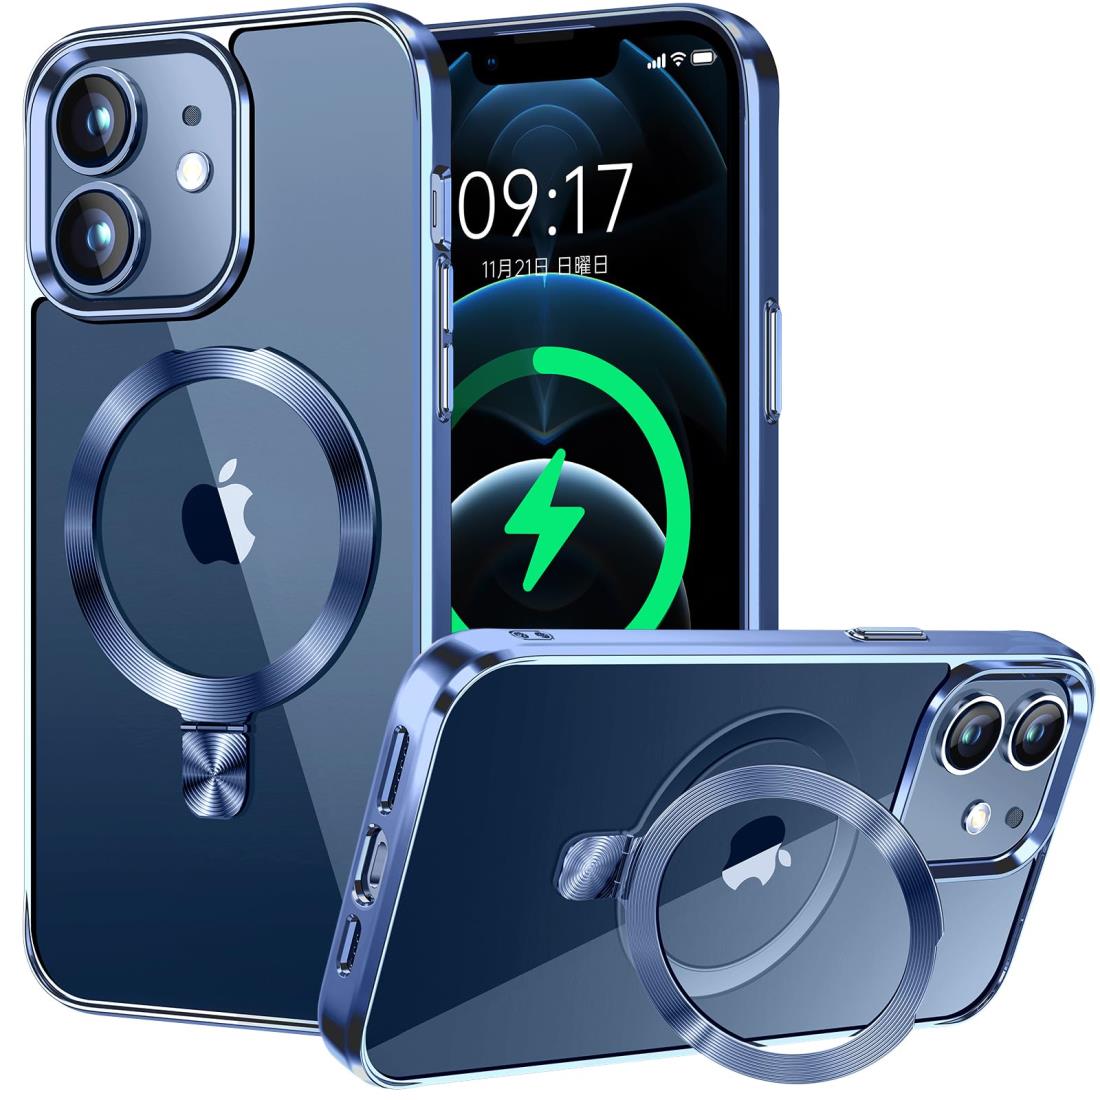 CSZENMEN【CD MagSafeリング・スタンド一体】iPhone12 用クリアケース[MagSafe対応・隠しスタンド] [本体の色・メッキバンパー]ストラップホール付き 角度調整可 米軍MIL規格取得・耐衝撃 アイホン12透明ケース スマホケース12 人気 6.1インチ(ブルー)